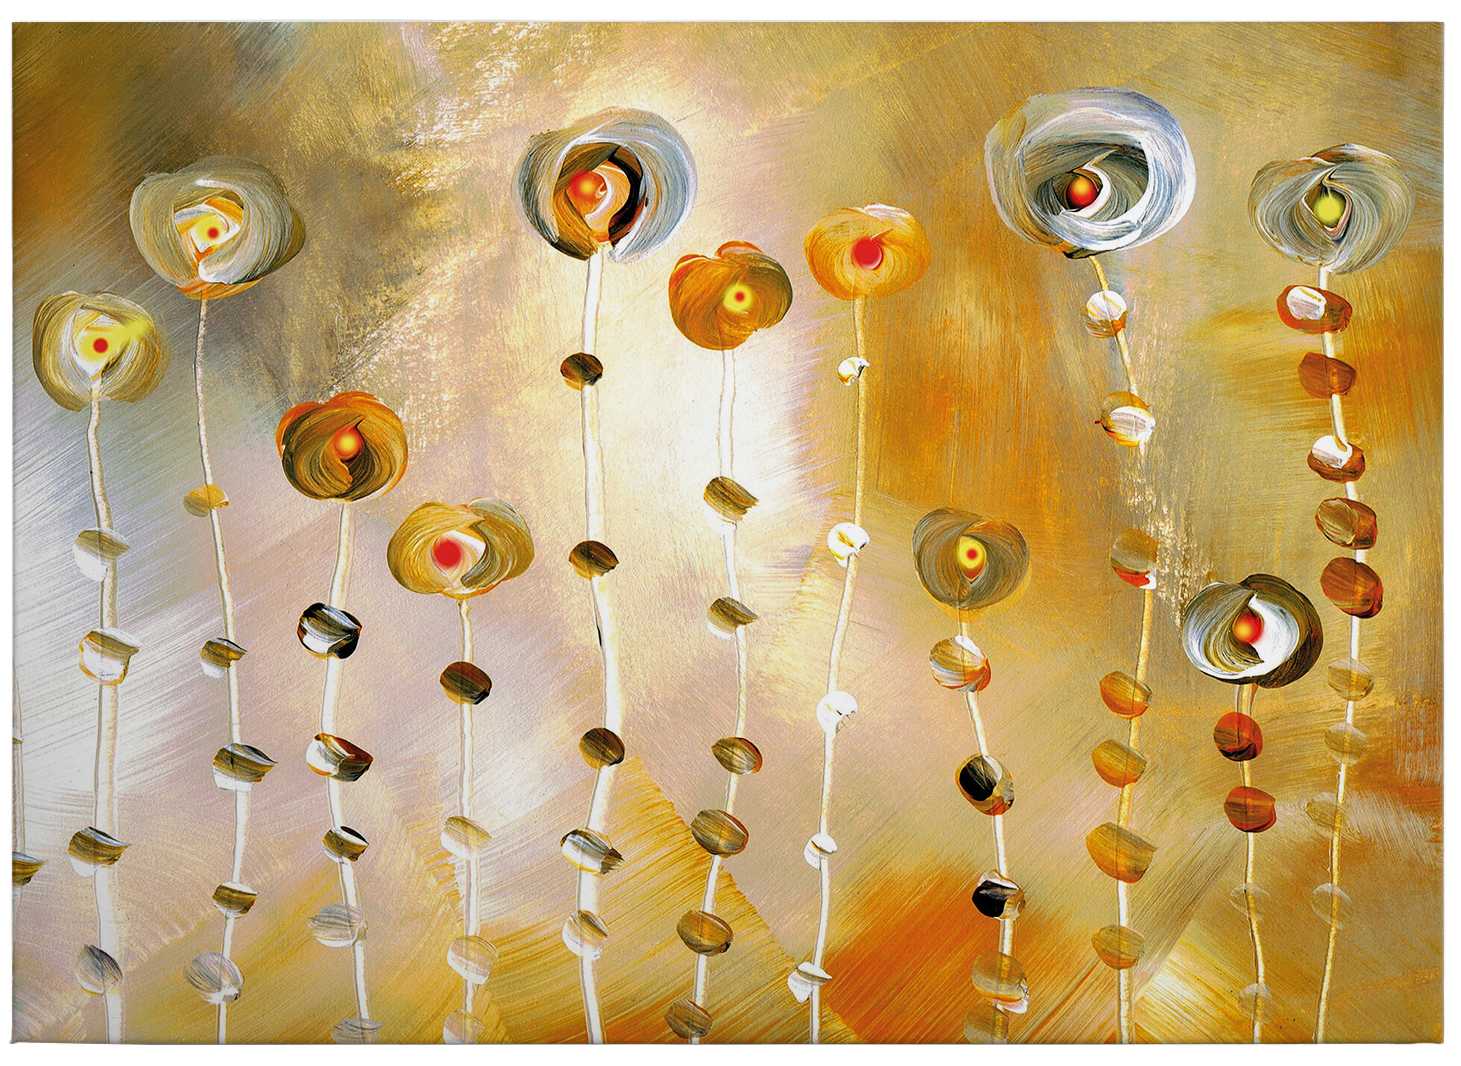             Canvas schilderij "Golden Eye" van Niksic - 0.70 m x 0.50 m
        